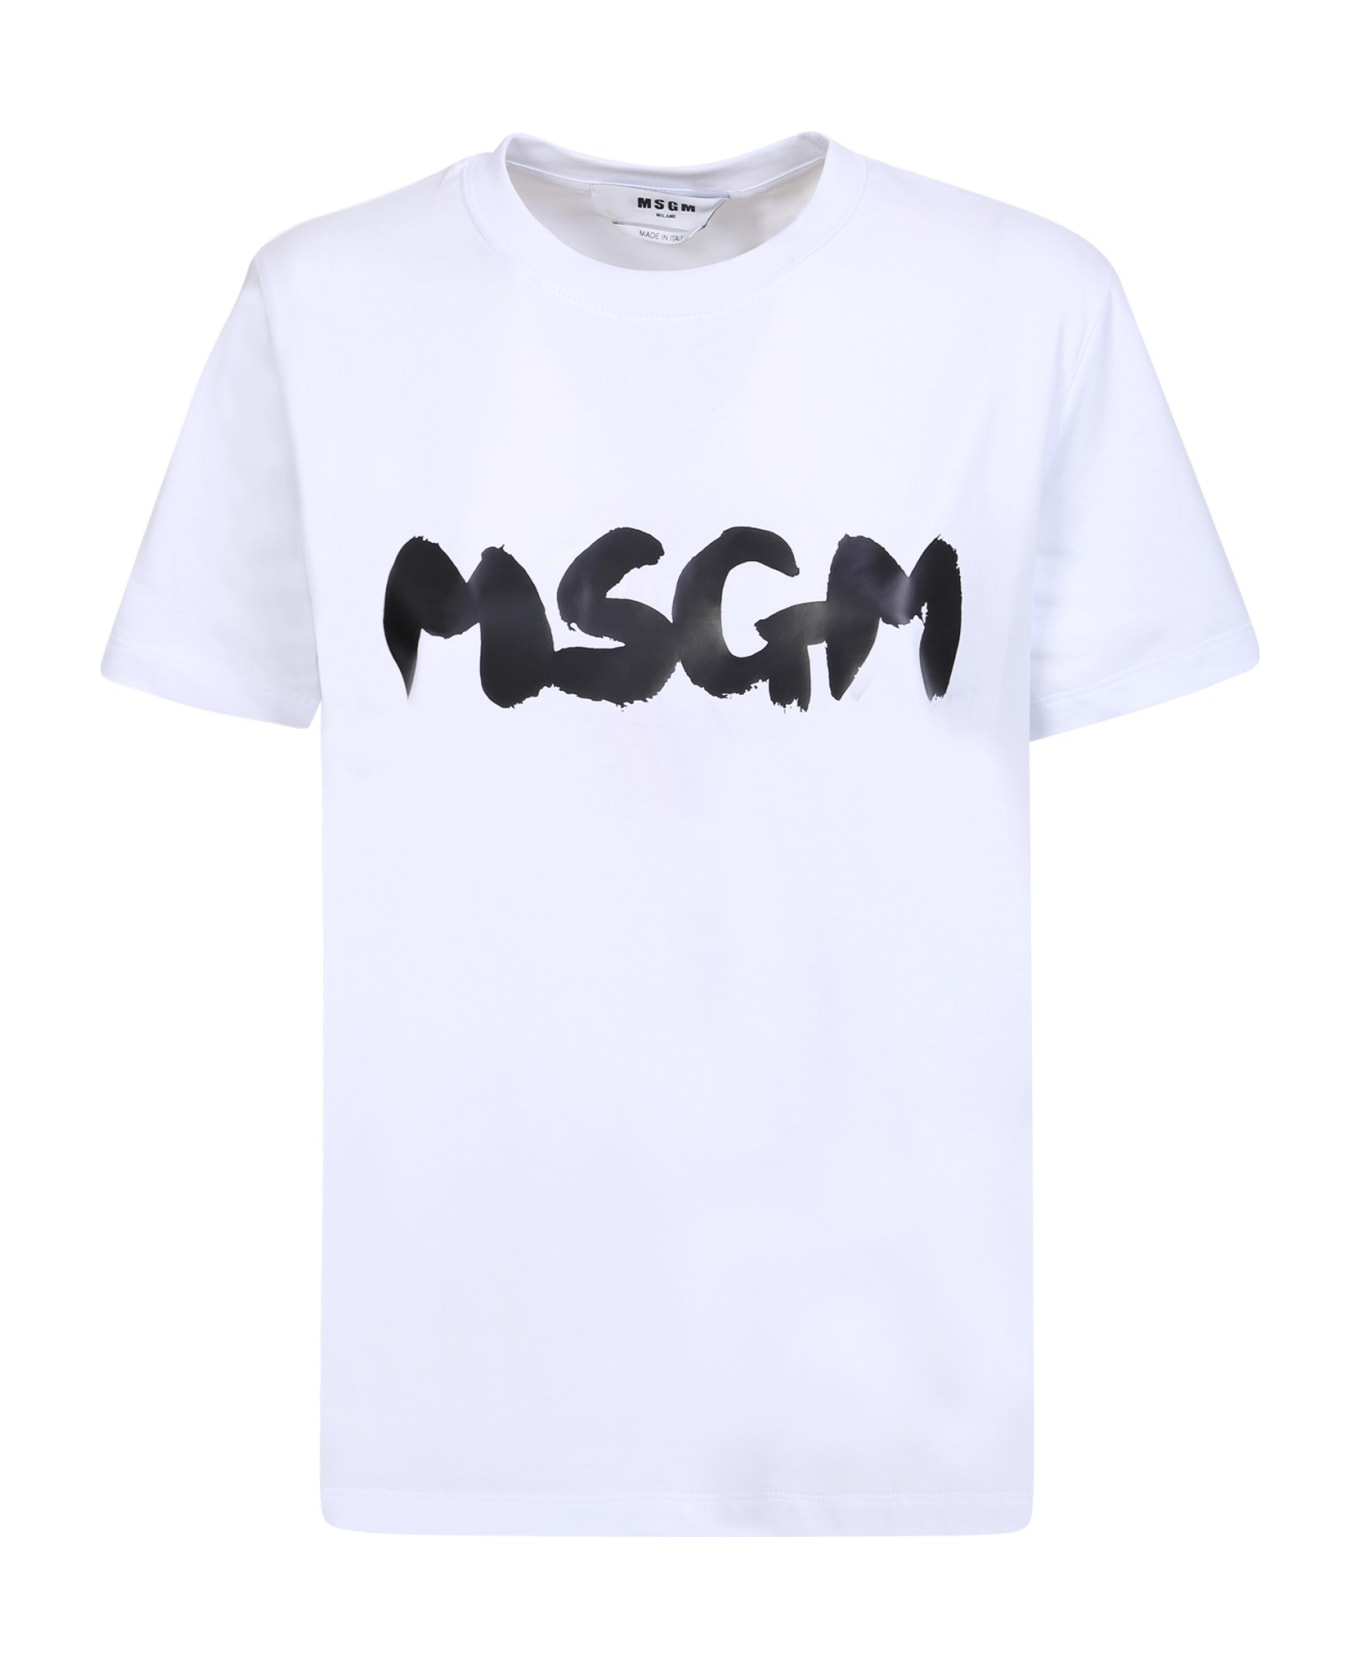 MSGM Bold Logo White And Black T-shirt - White